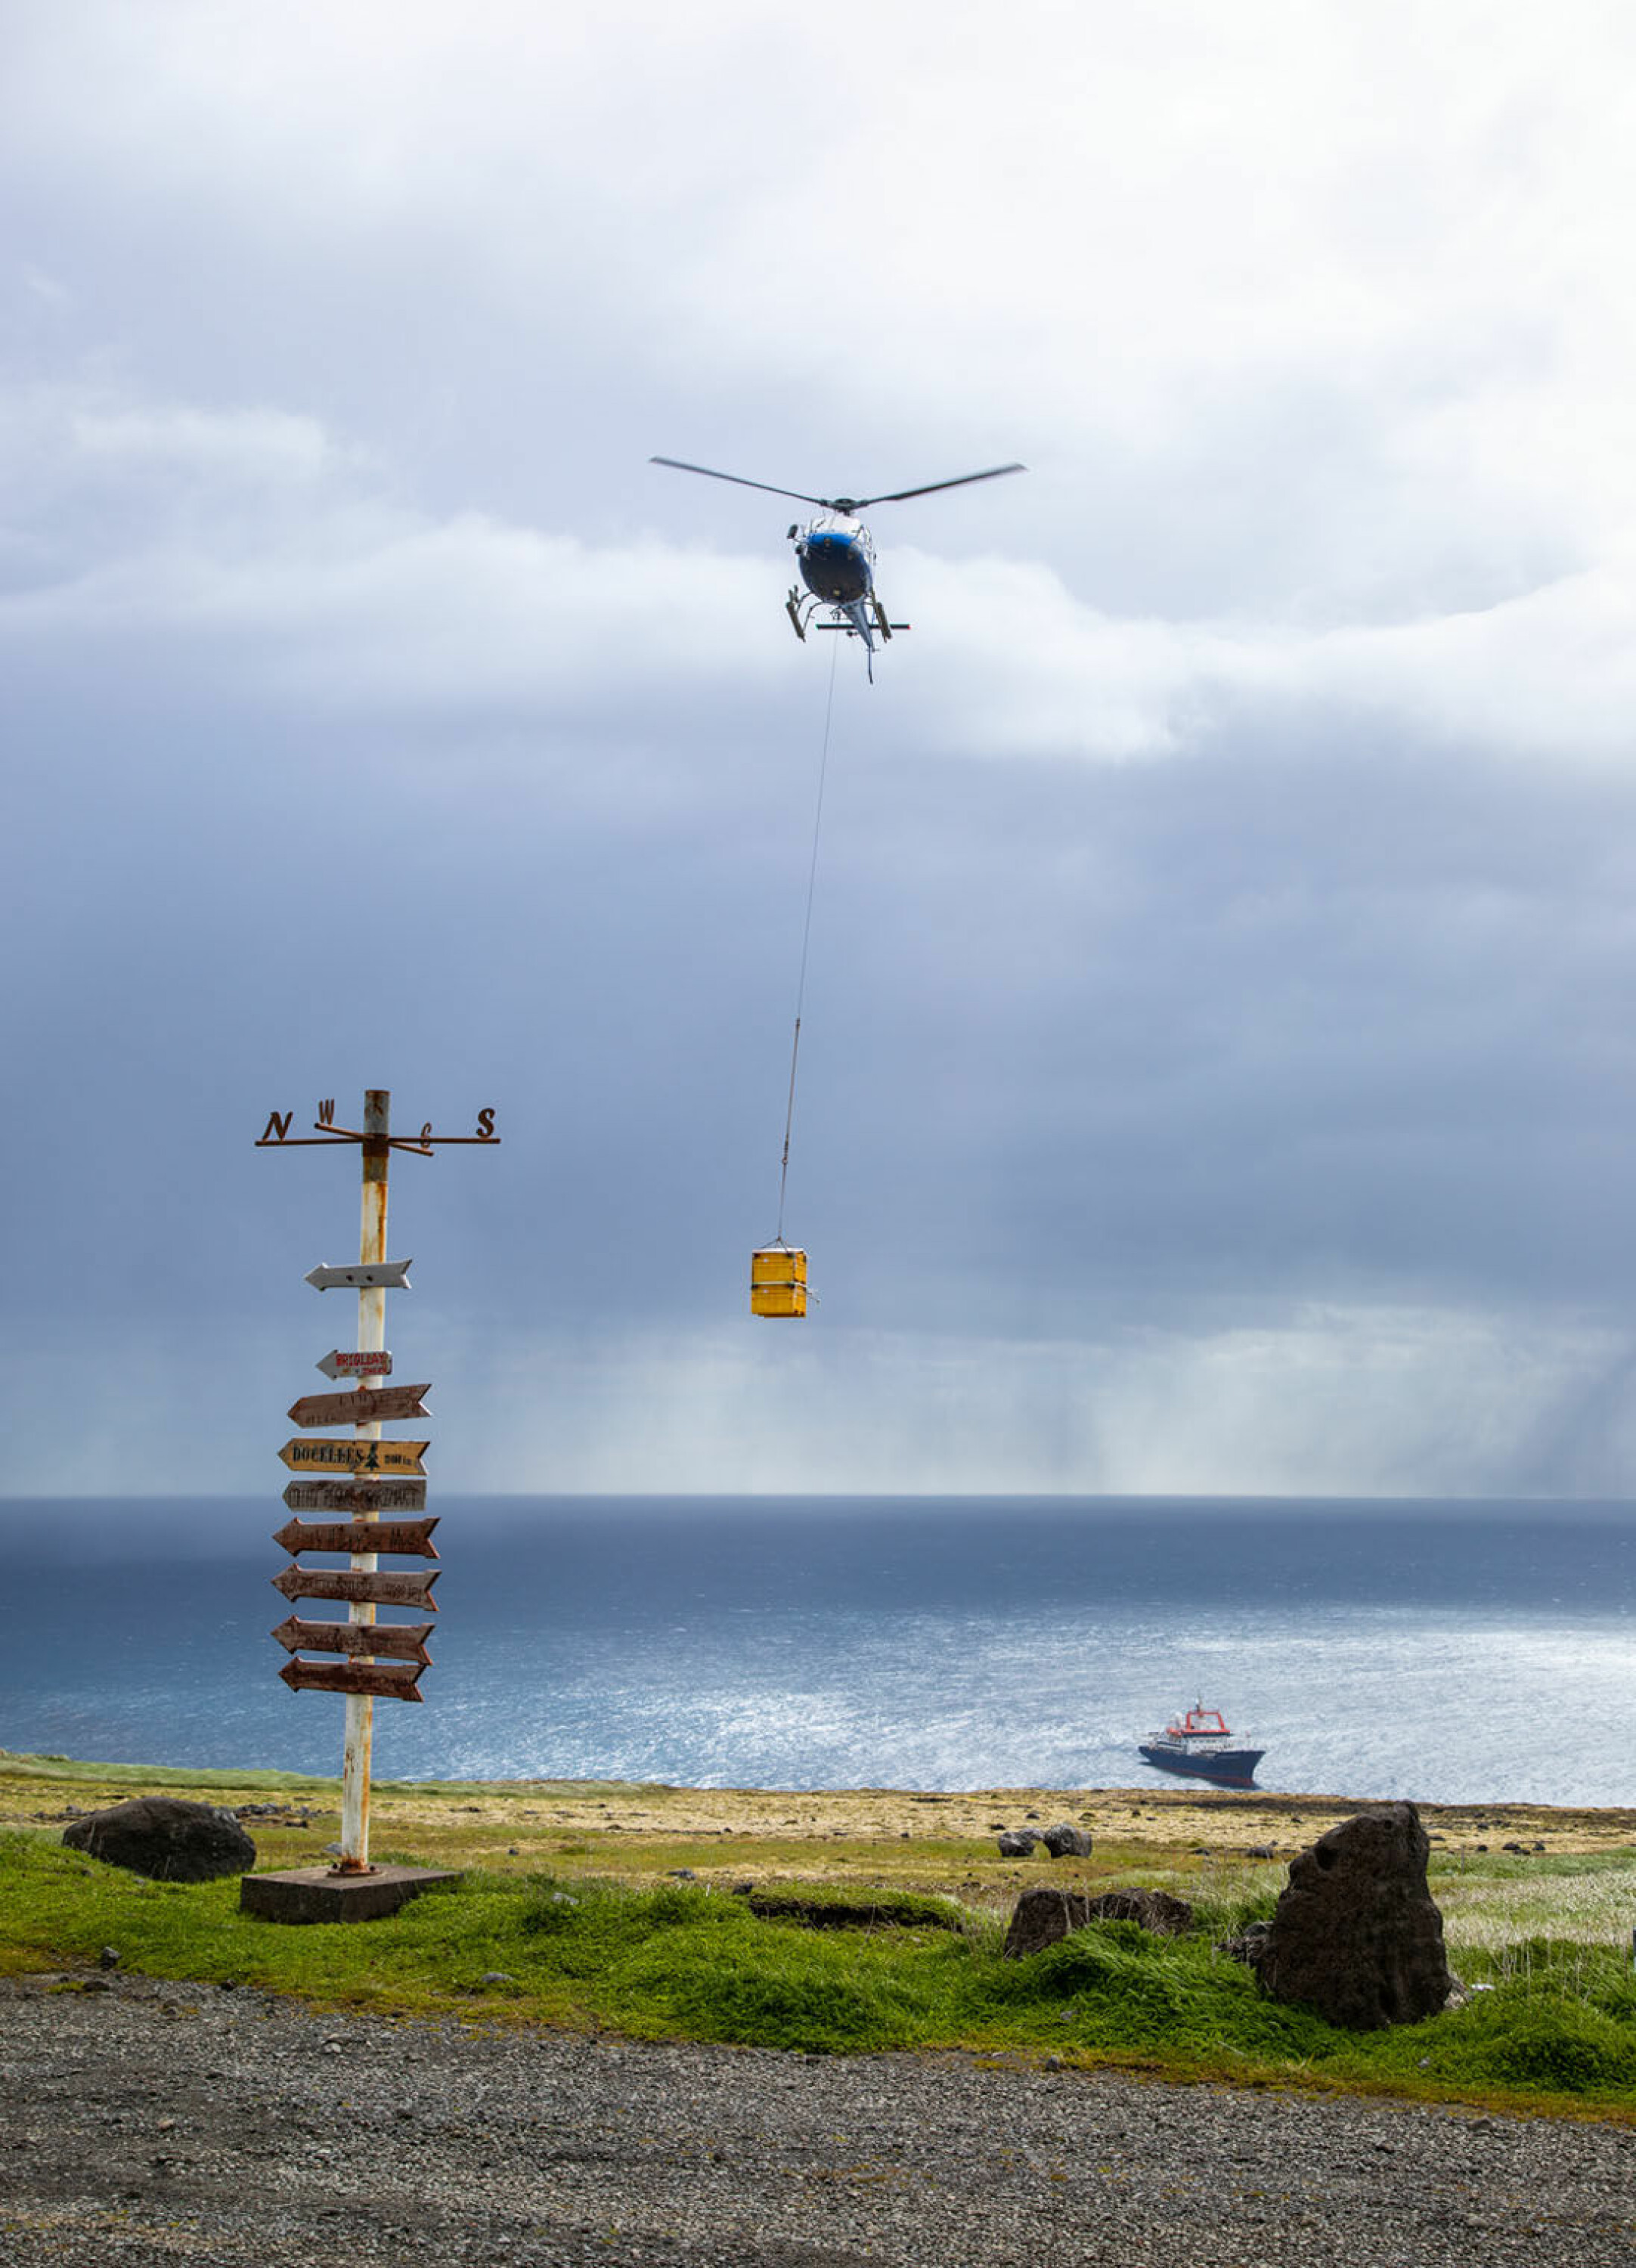 På vei sørover mot Kerguelen stoppet forskningsfartøyet ved Crozet Island i to dager for å levere forsyninger og skifte ut mannskap på øyas forskningsstasjon. (Foto: Sindre Eldøy, CC BY-SA 4.0)